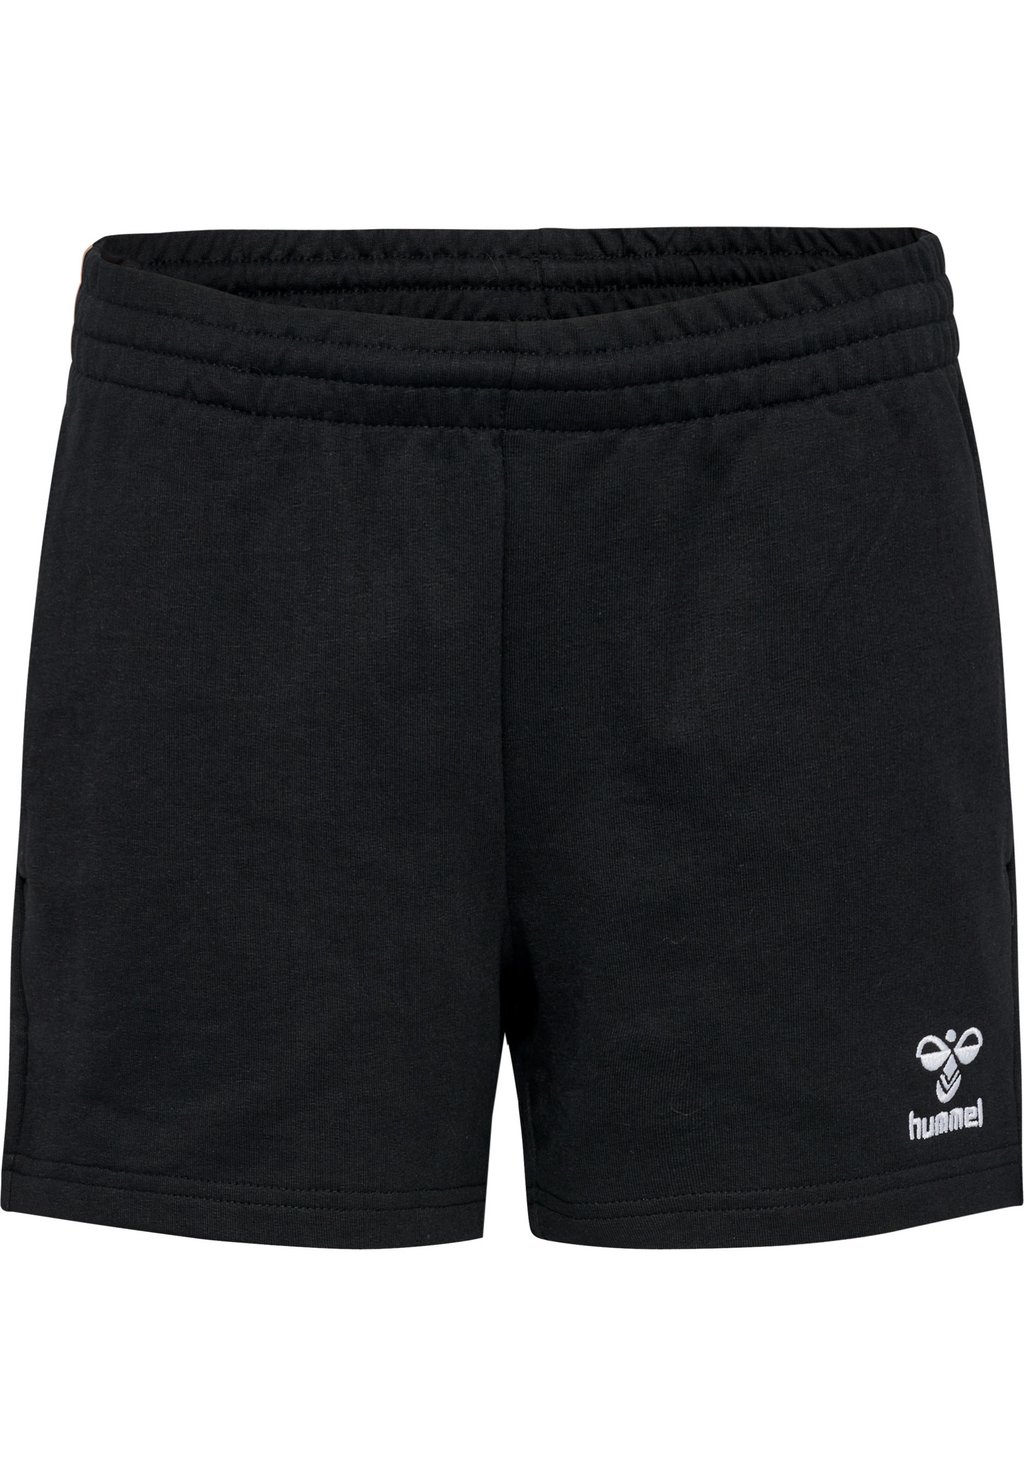 короткие спортивные штаны mejse hummel цвет chutney Короткие спортивные штаны Hummel, цвет black